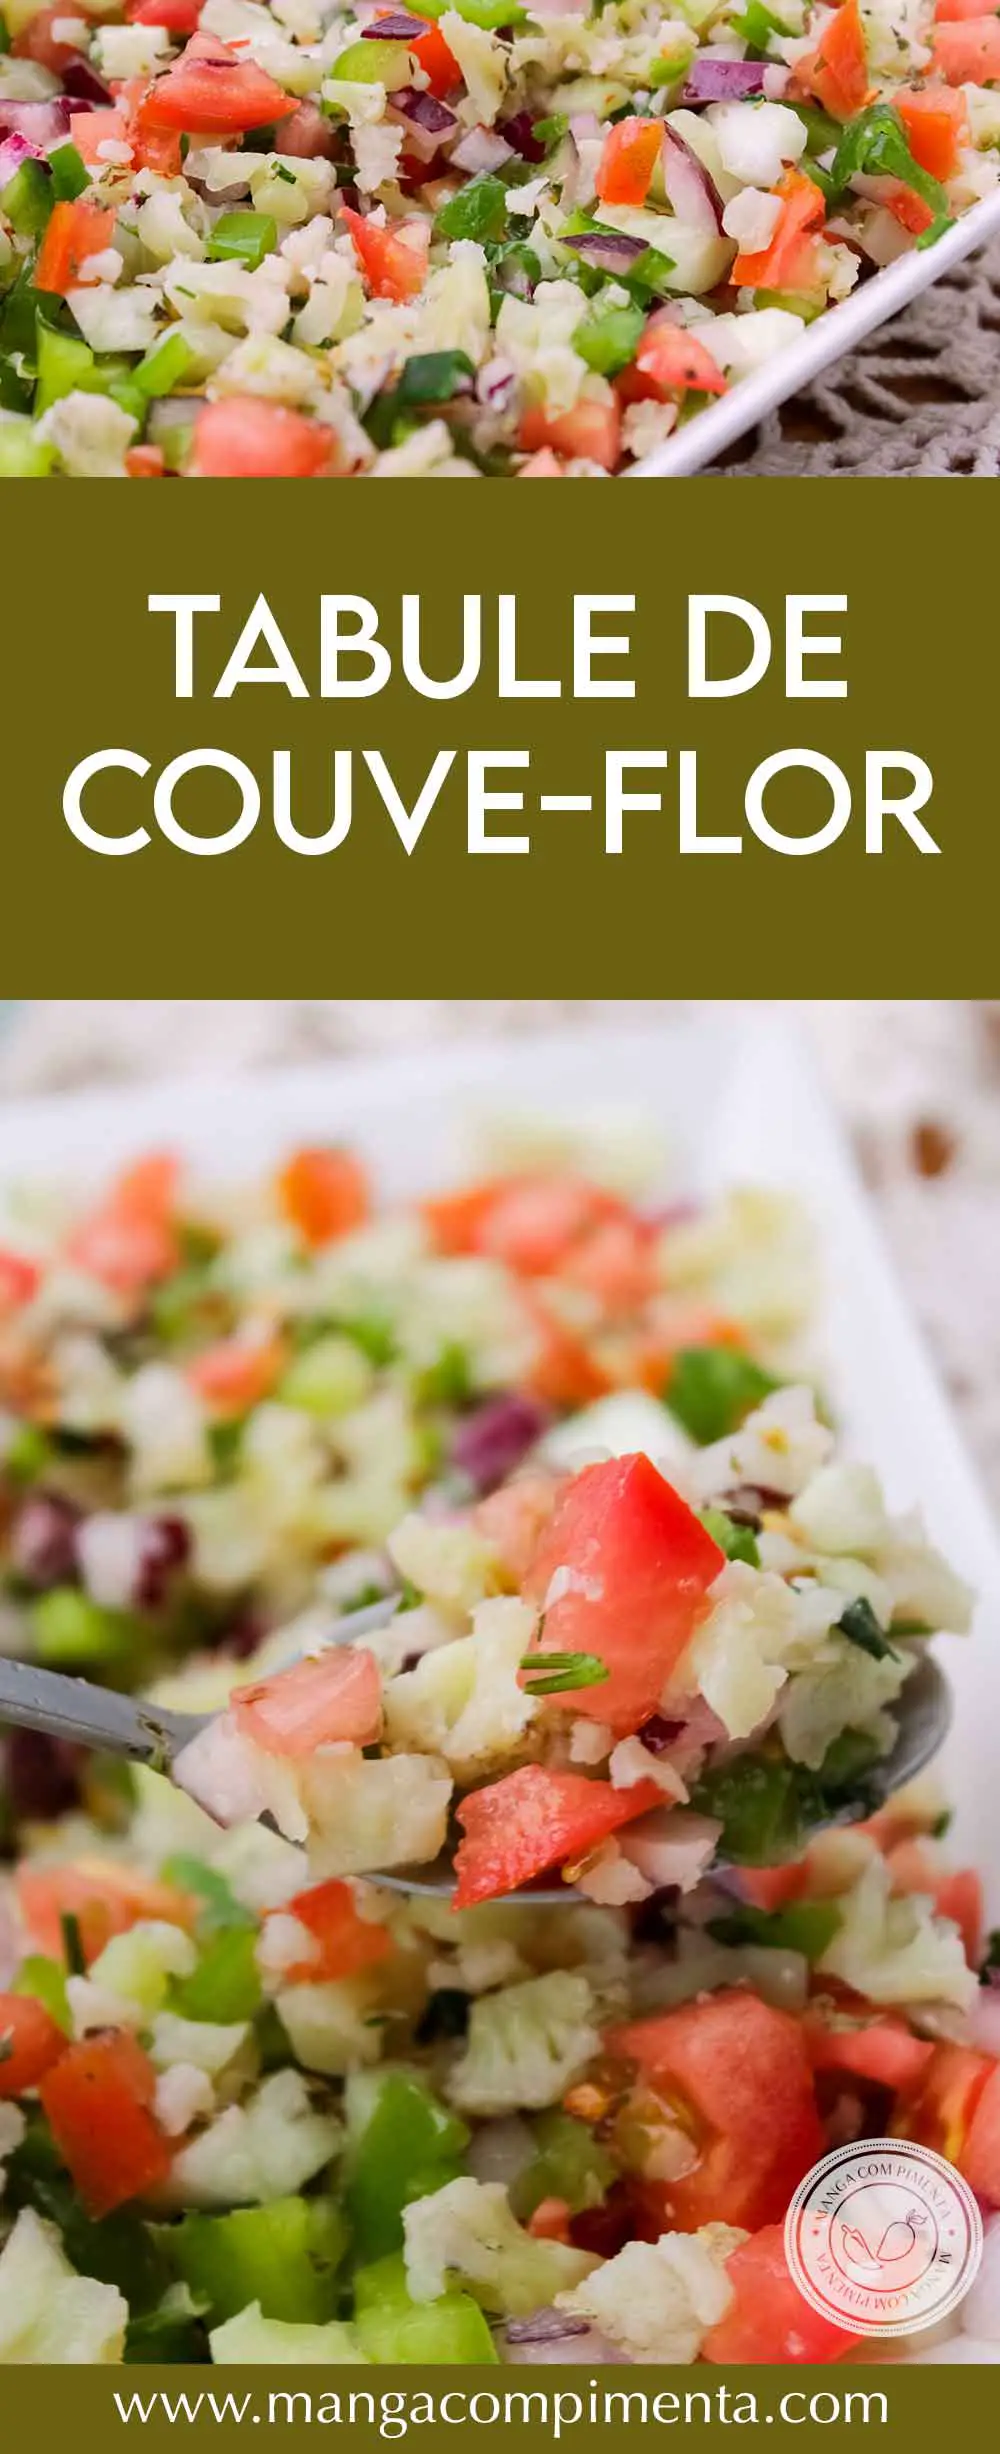 Receita de Tabule de Couve-flor - prepare para servir no almoço em dias quentes.